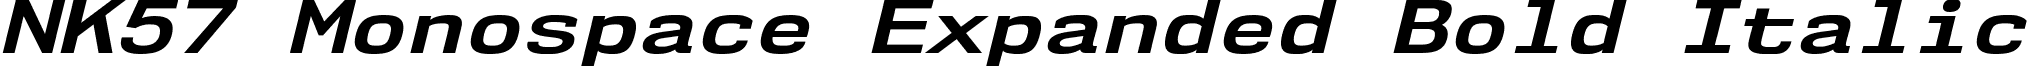 NK57 Monospace Expanded Bold Italic font - nk57-monospace.expanded-bold-italic.ttf